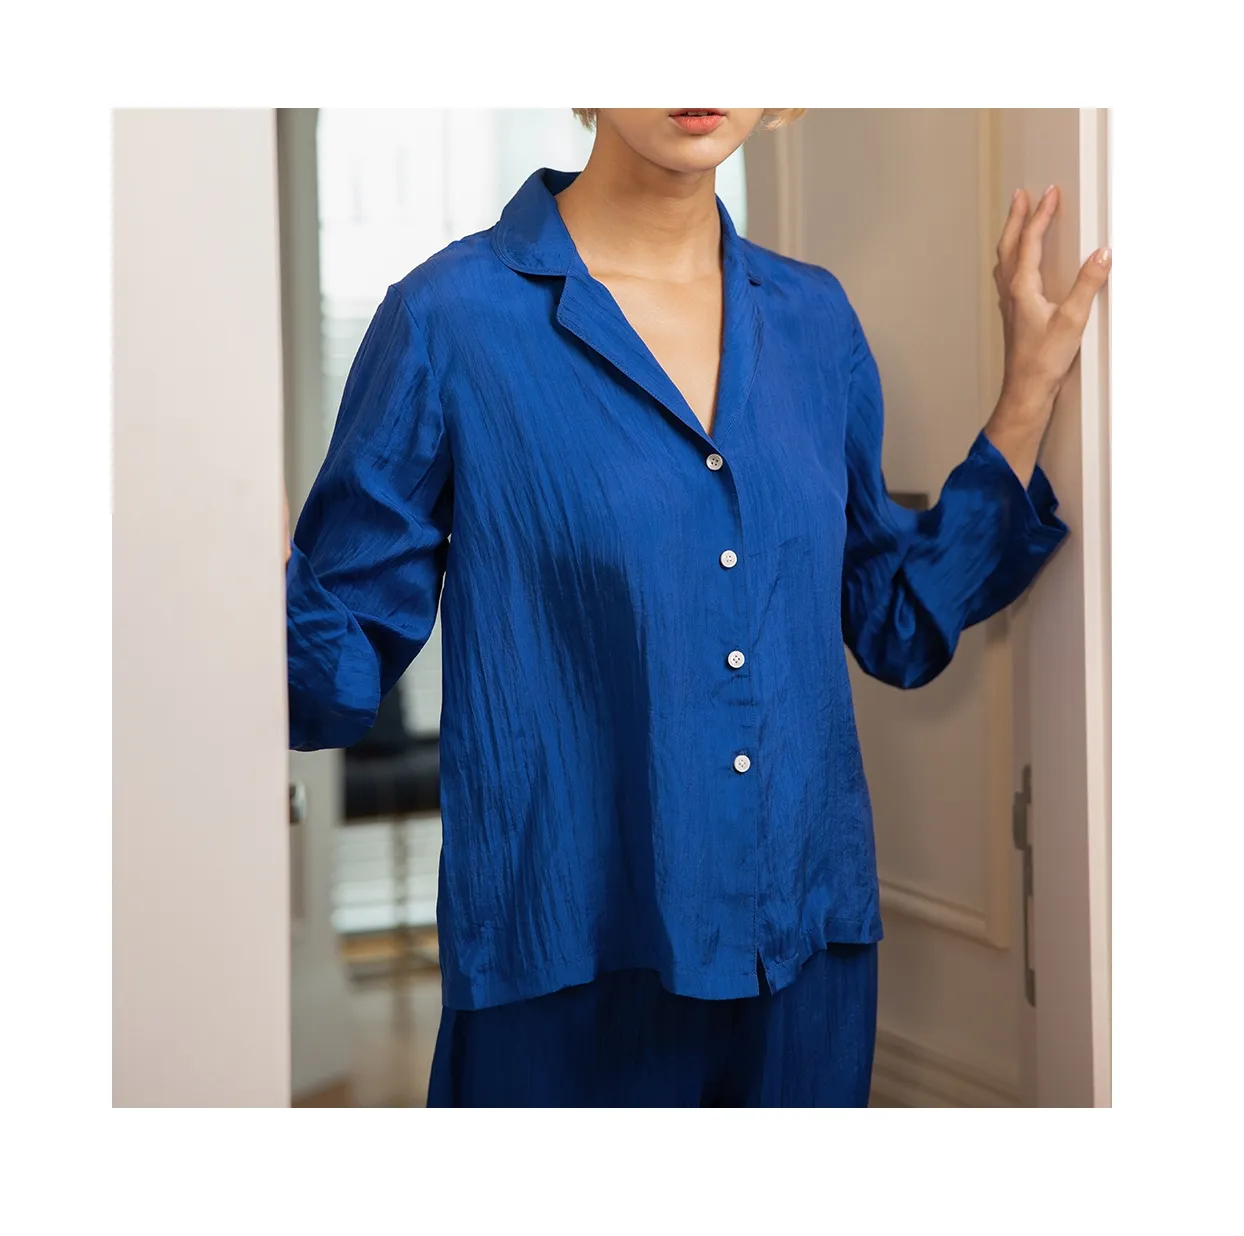 Pajama Women's Sleepwear 100% Silk dress Pajama Set silk Nighty Set Long Women Pijamas Sets made in Vietnam